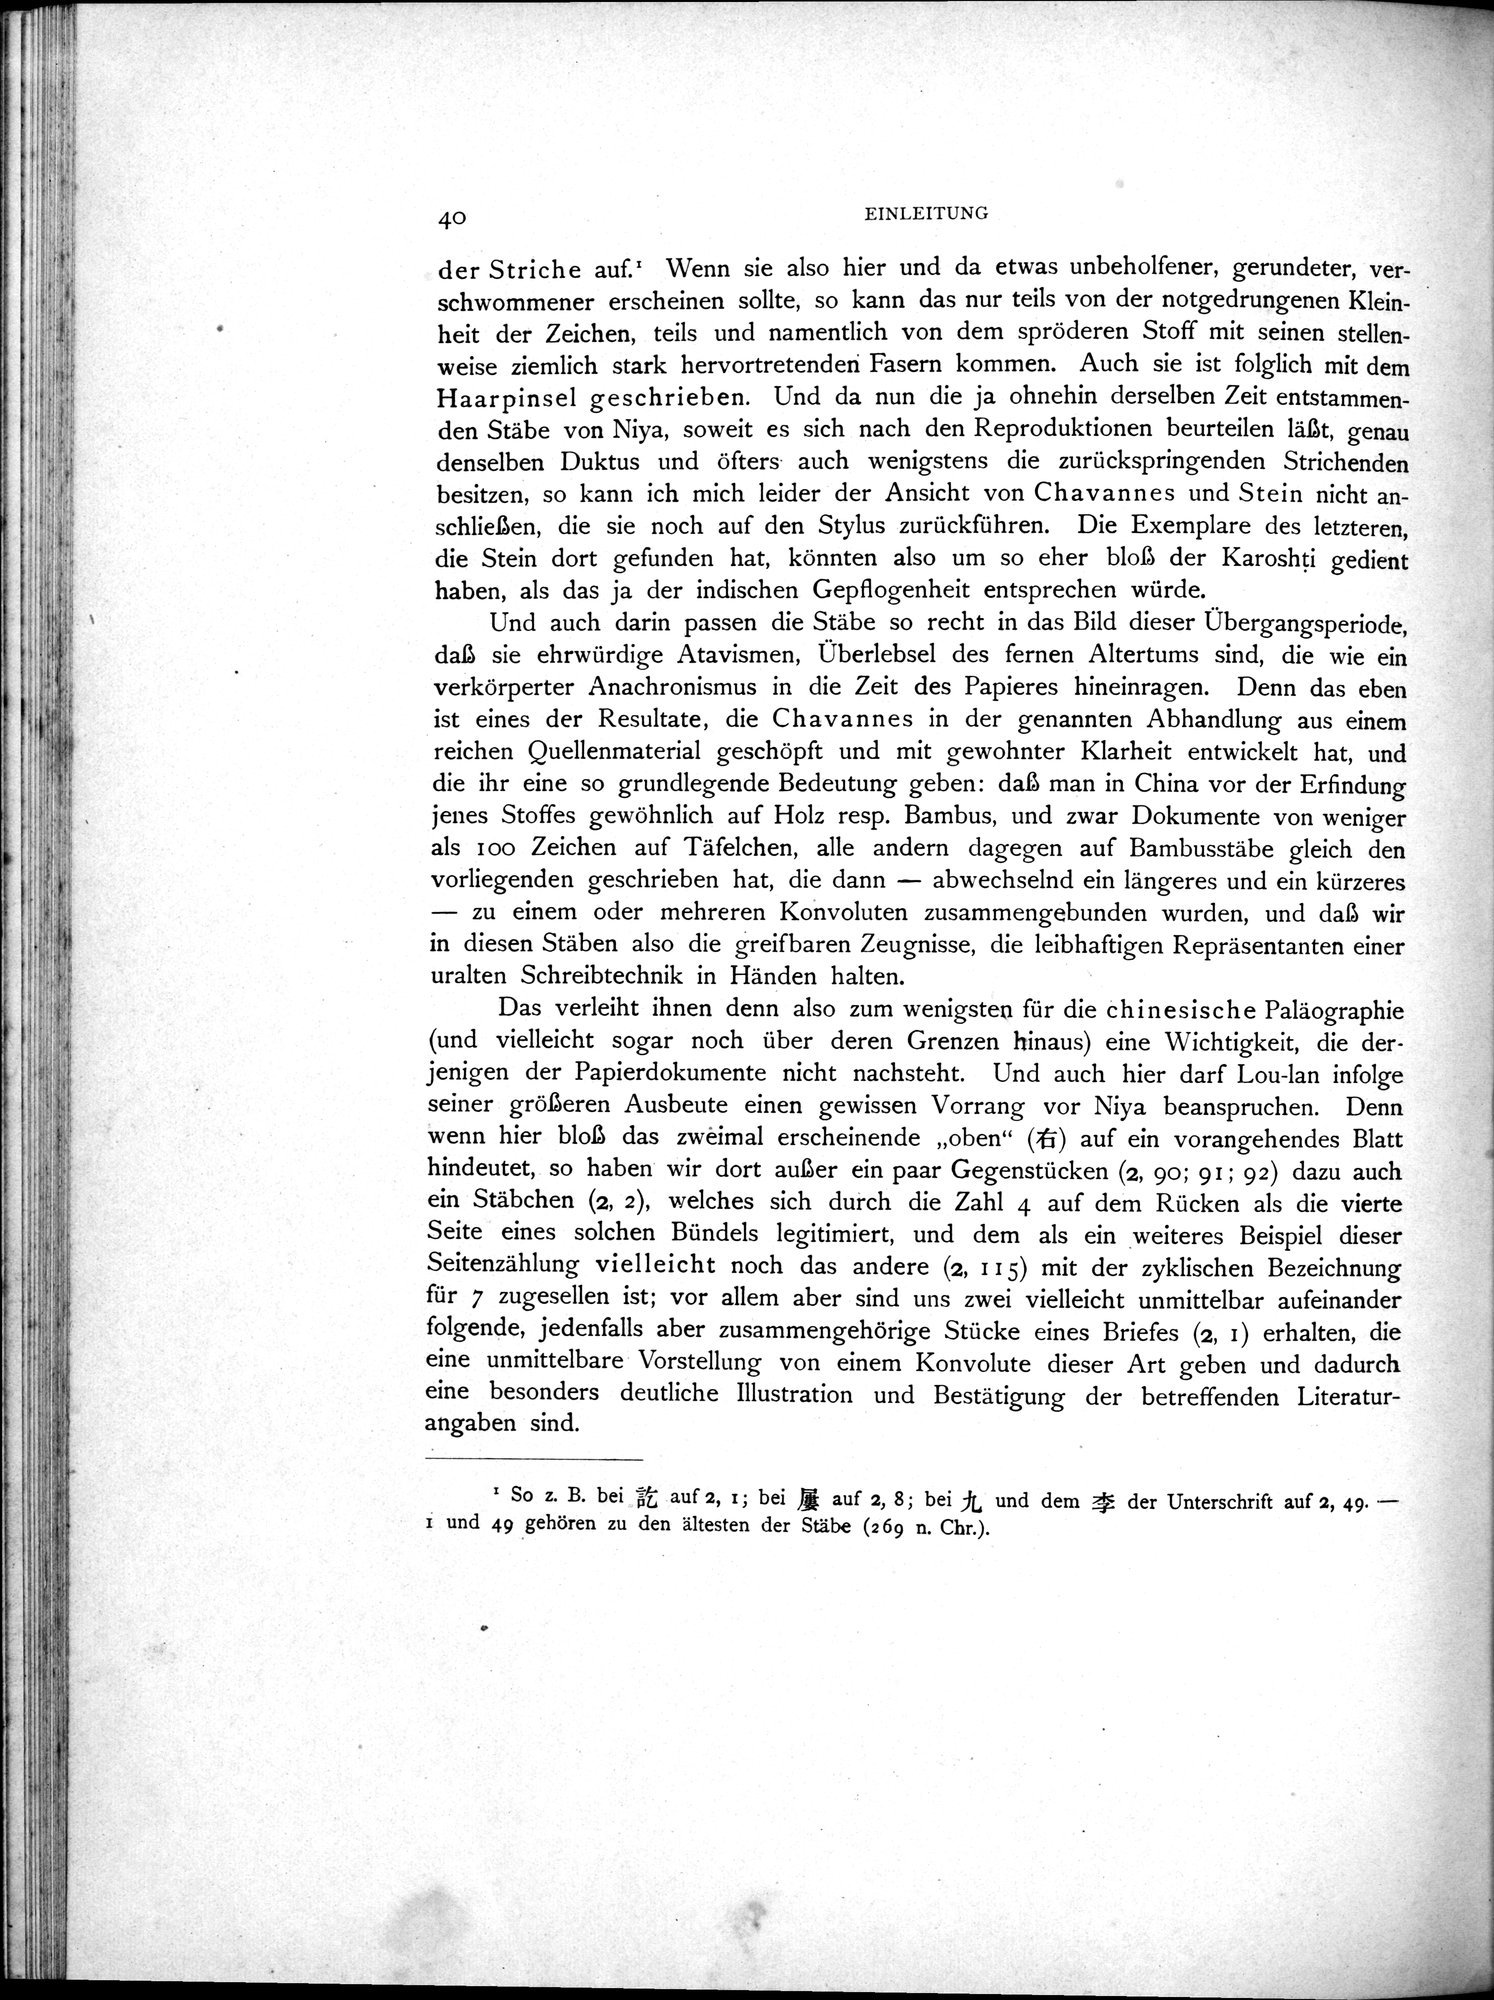 Die Chinesischen Handschriften- und sonstigen Kleinfunde Sven Hedins in Lou-lan : vol.1 / Page 64 (Grayscale High Resolution Image)